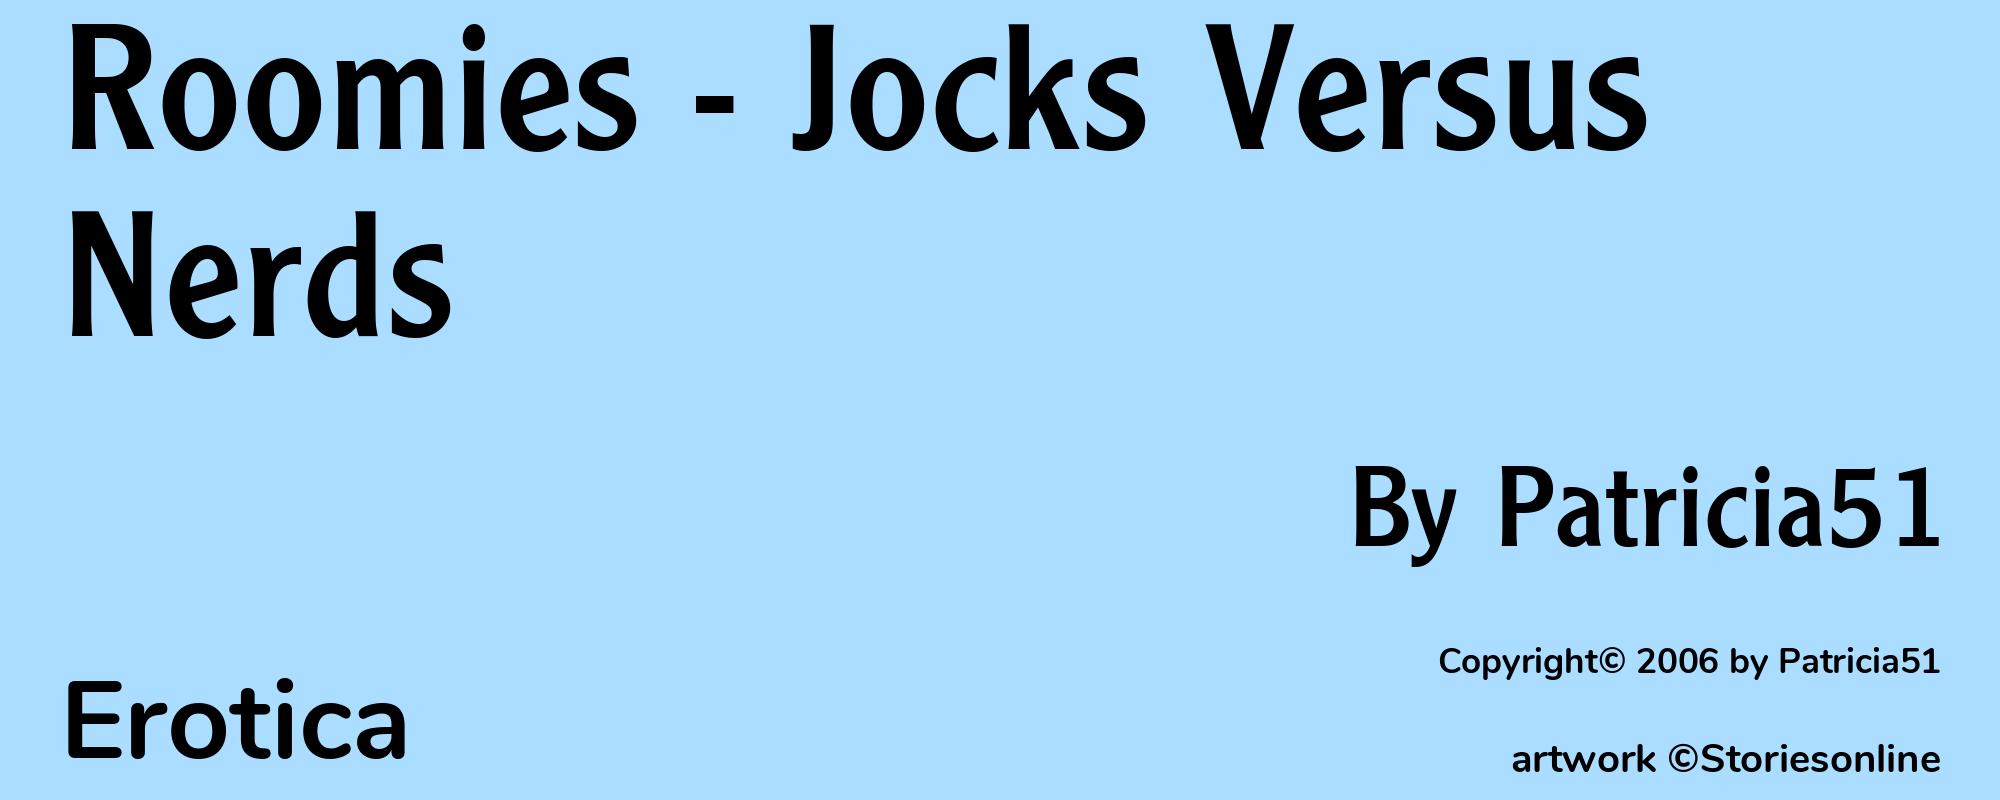 Roomies - Jocks Versus Nerds - Cover